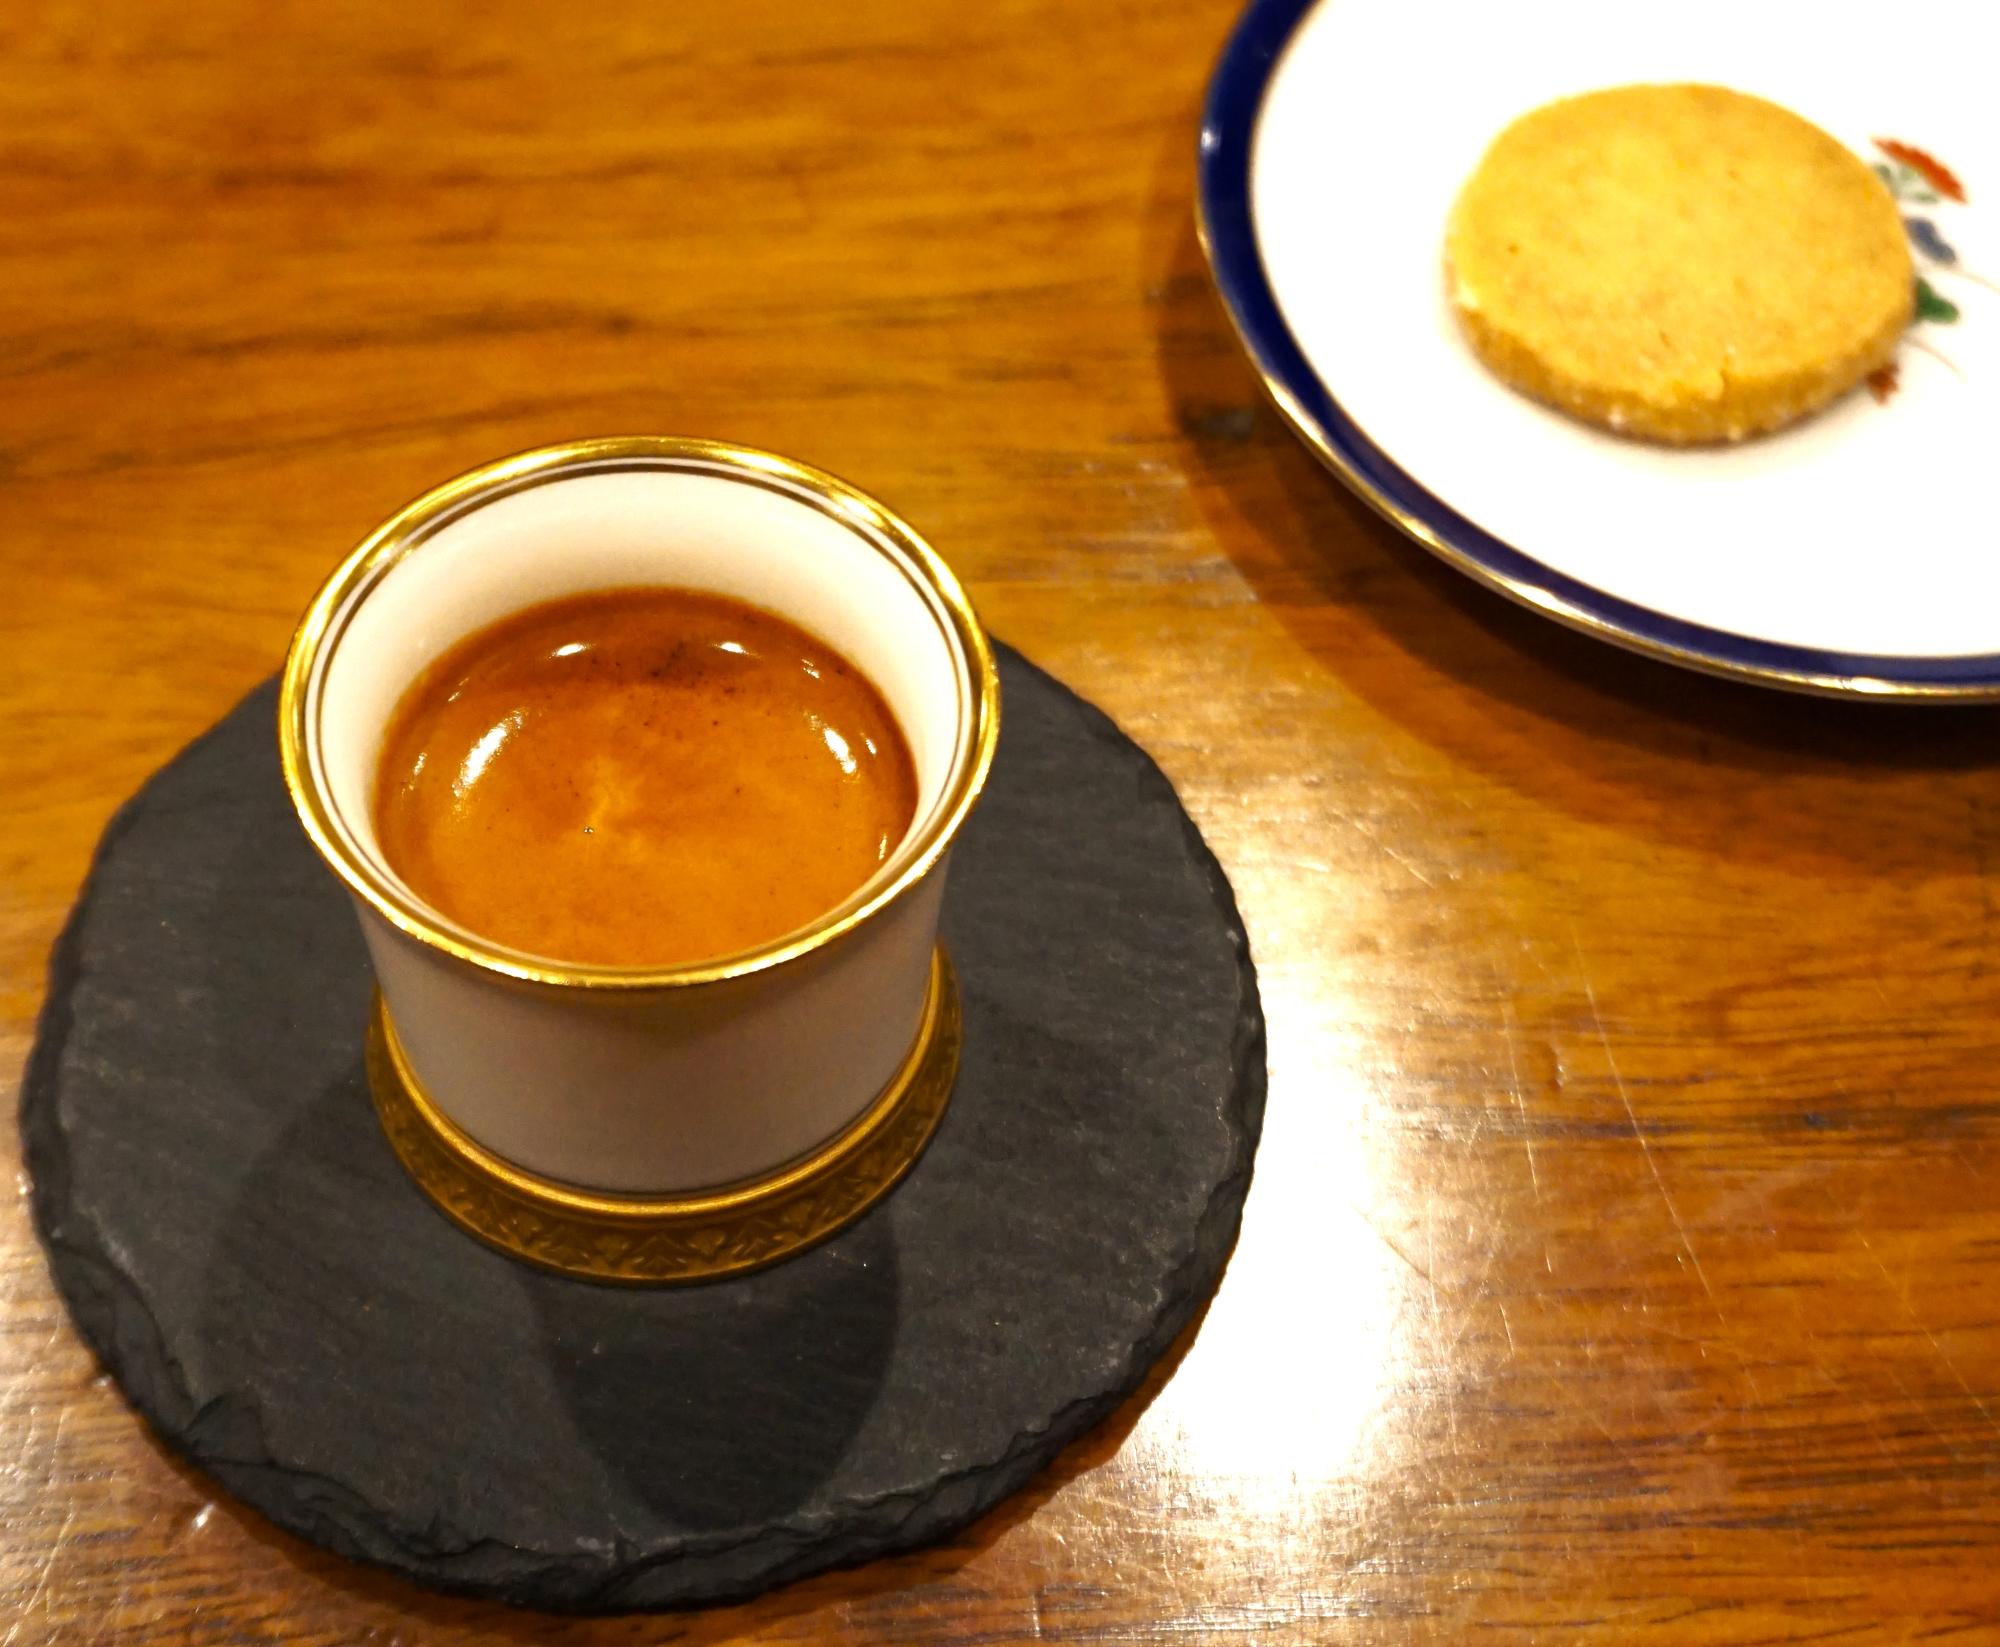 Espresso(700円税込）は、塩味の効いた自家製クッキーもセットで楽しめます